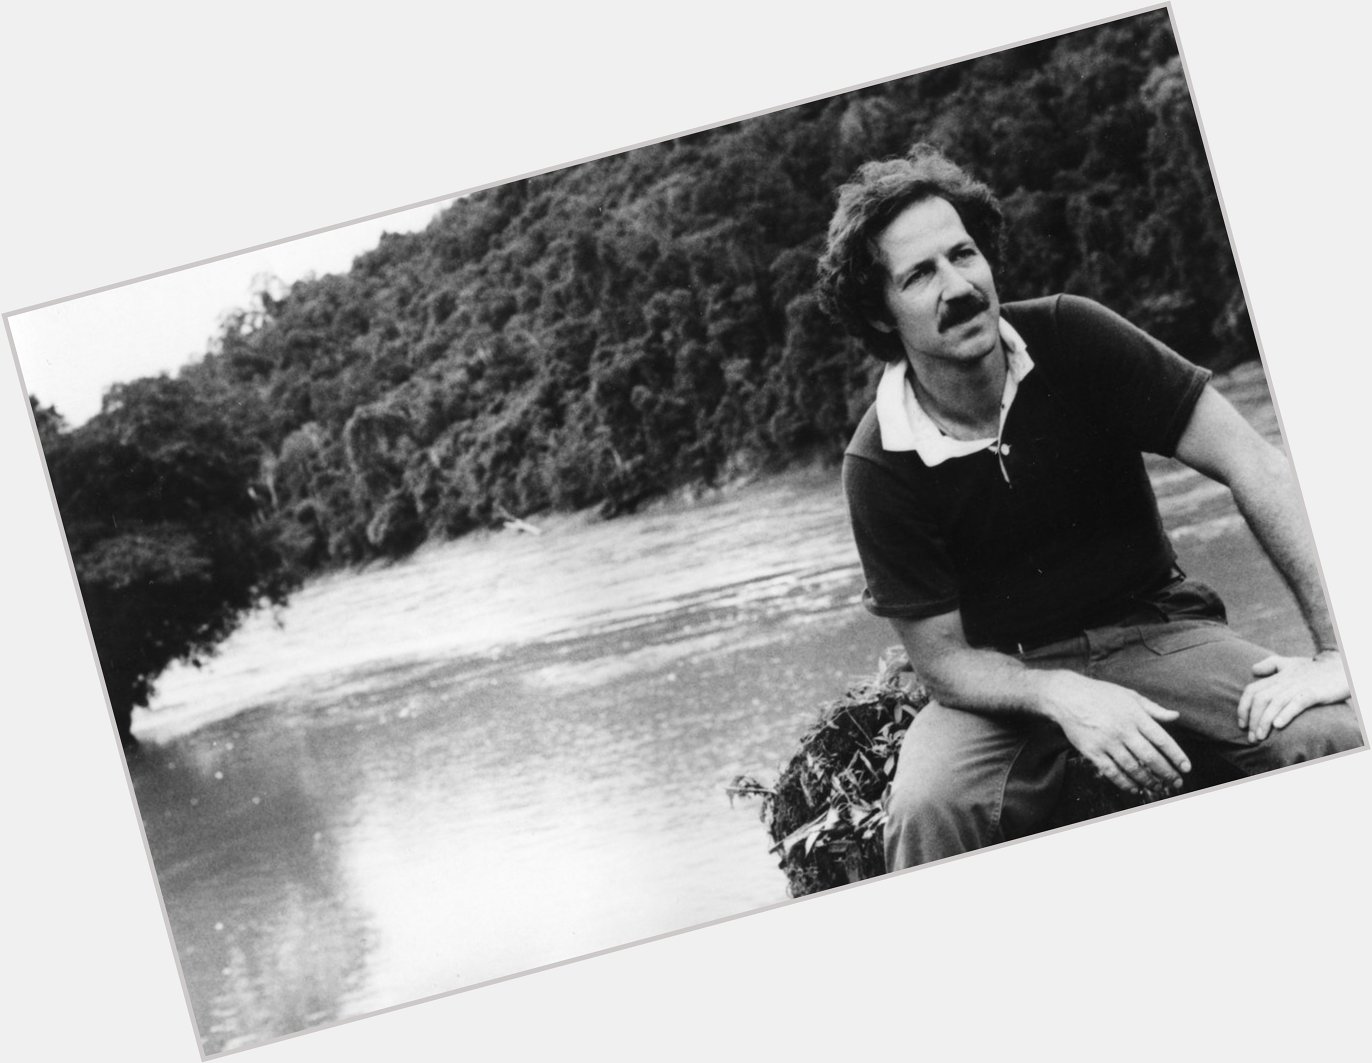 Happy 75th birthday Werner Herzog! 